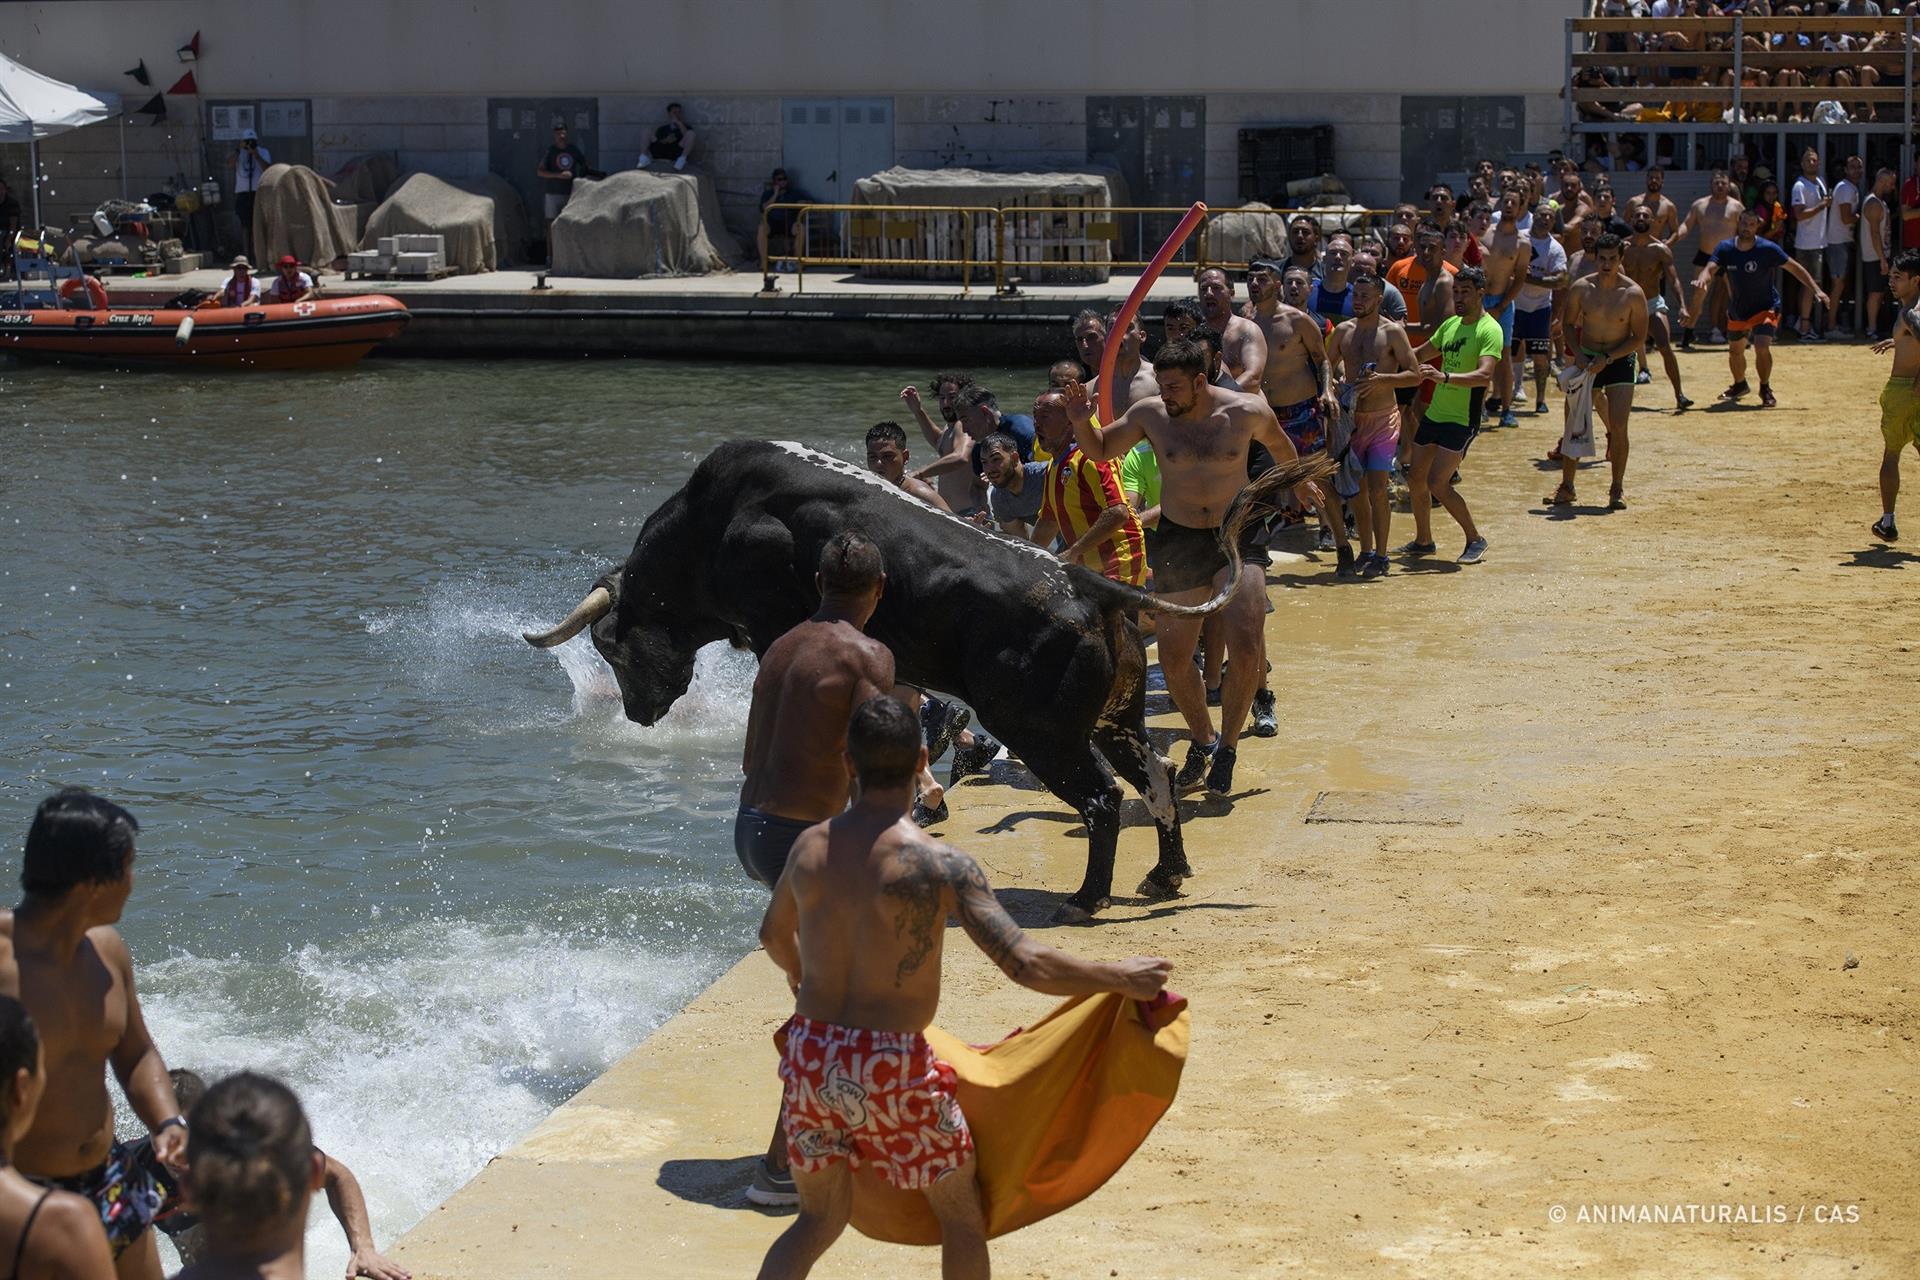 Un momento de uno de los festejos taurinos celebrados en tierras valencianas este verano.